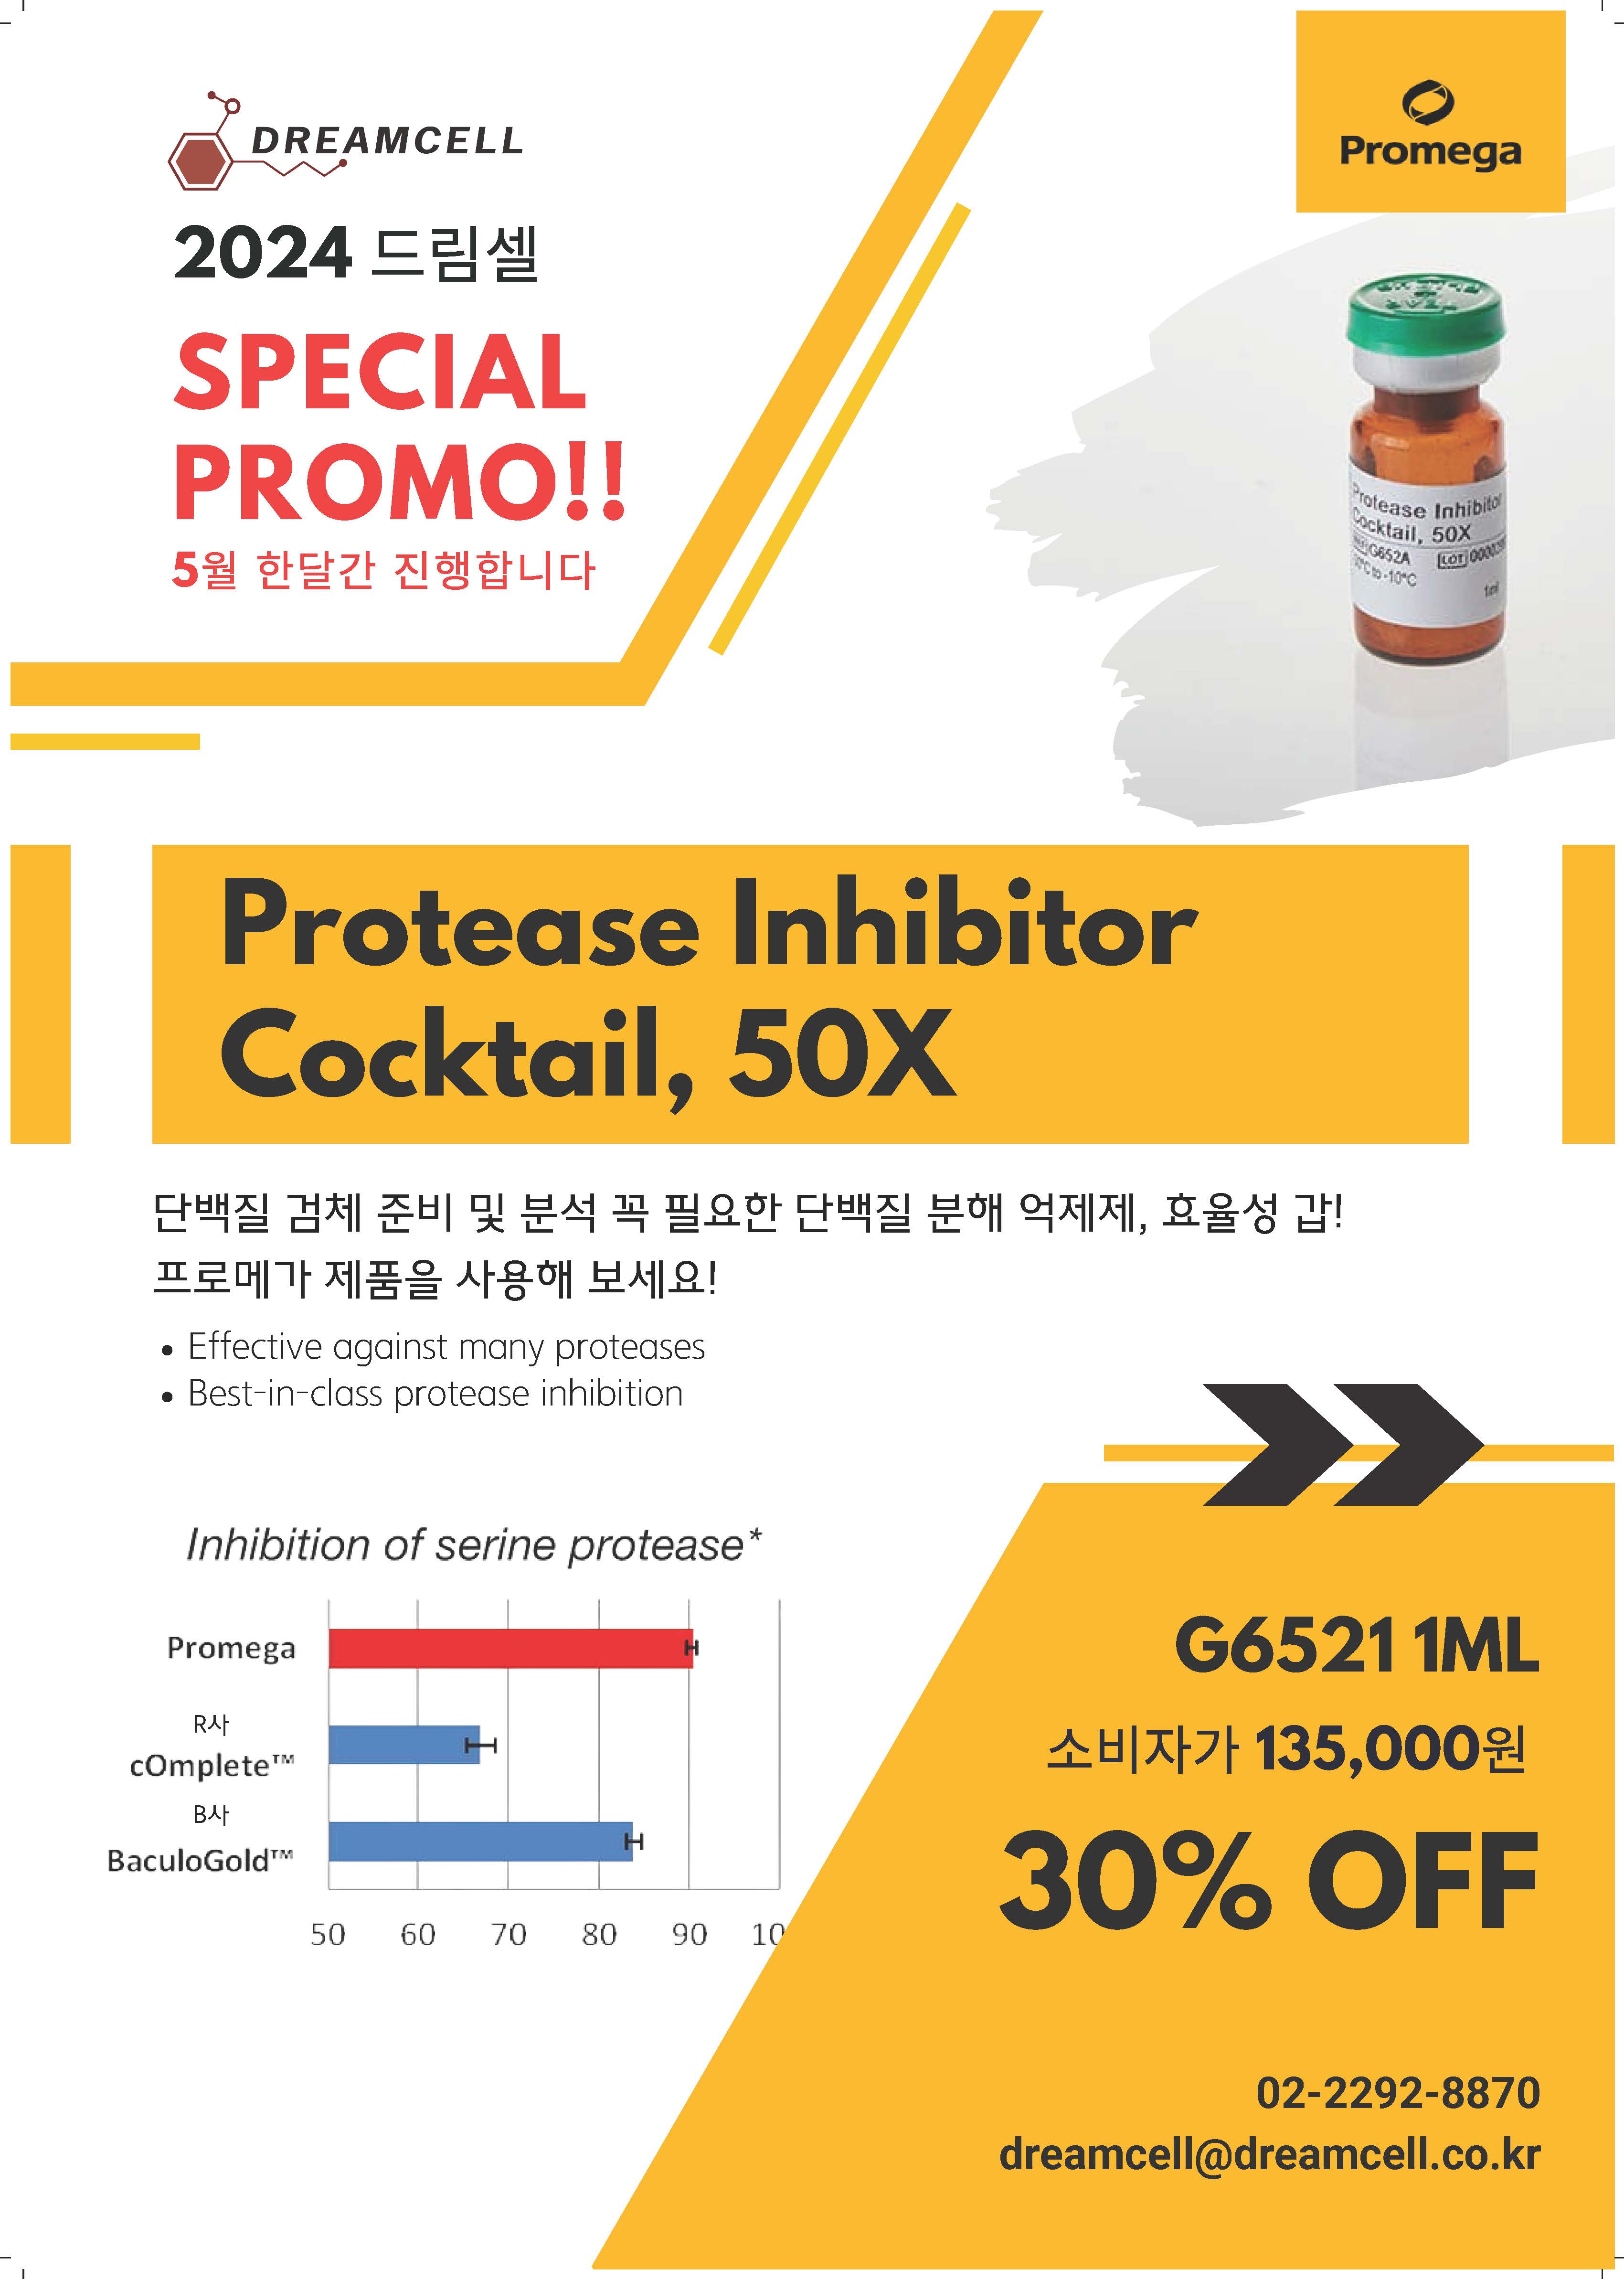 [프로메가] Protease Inhibitor Cocktail,50X 할인 행사와 첫 구매 전 품목 할인 행사 안내 드립니다!(~5/31)